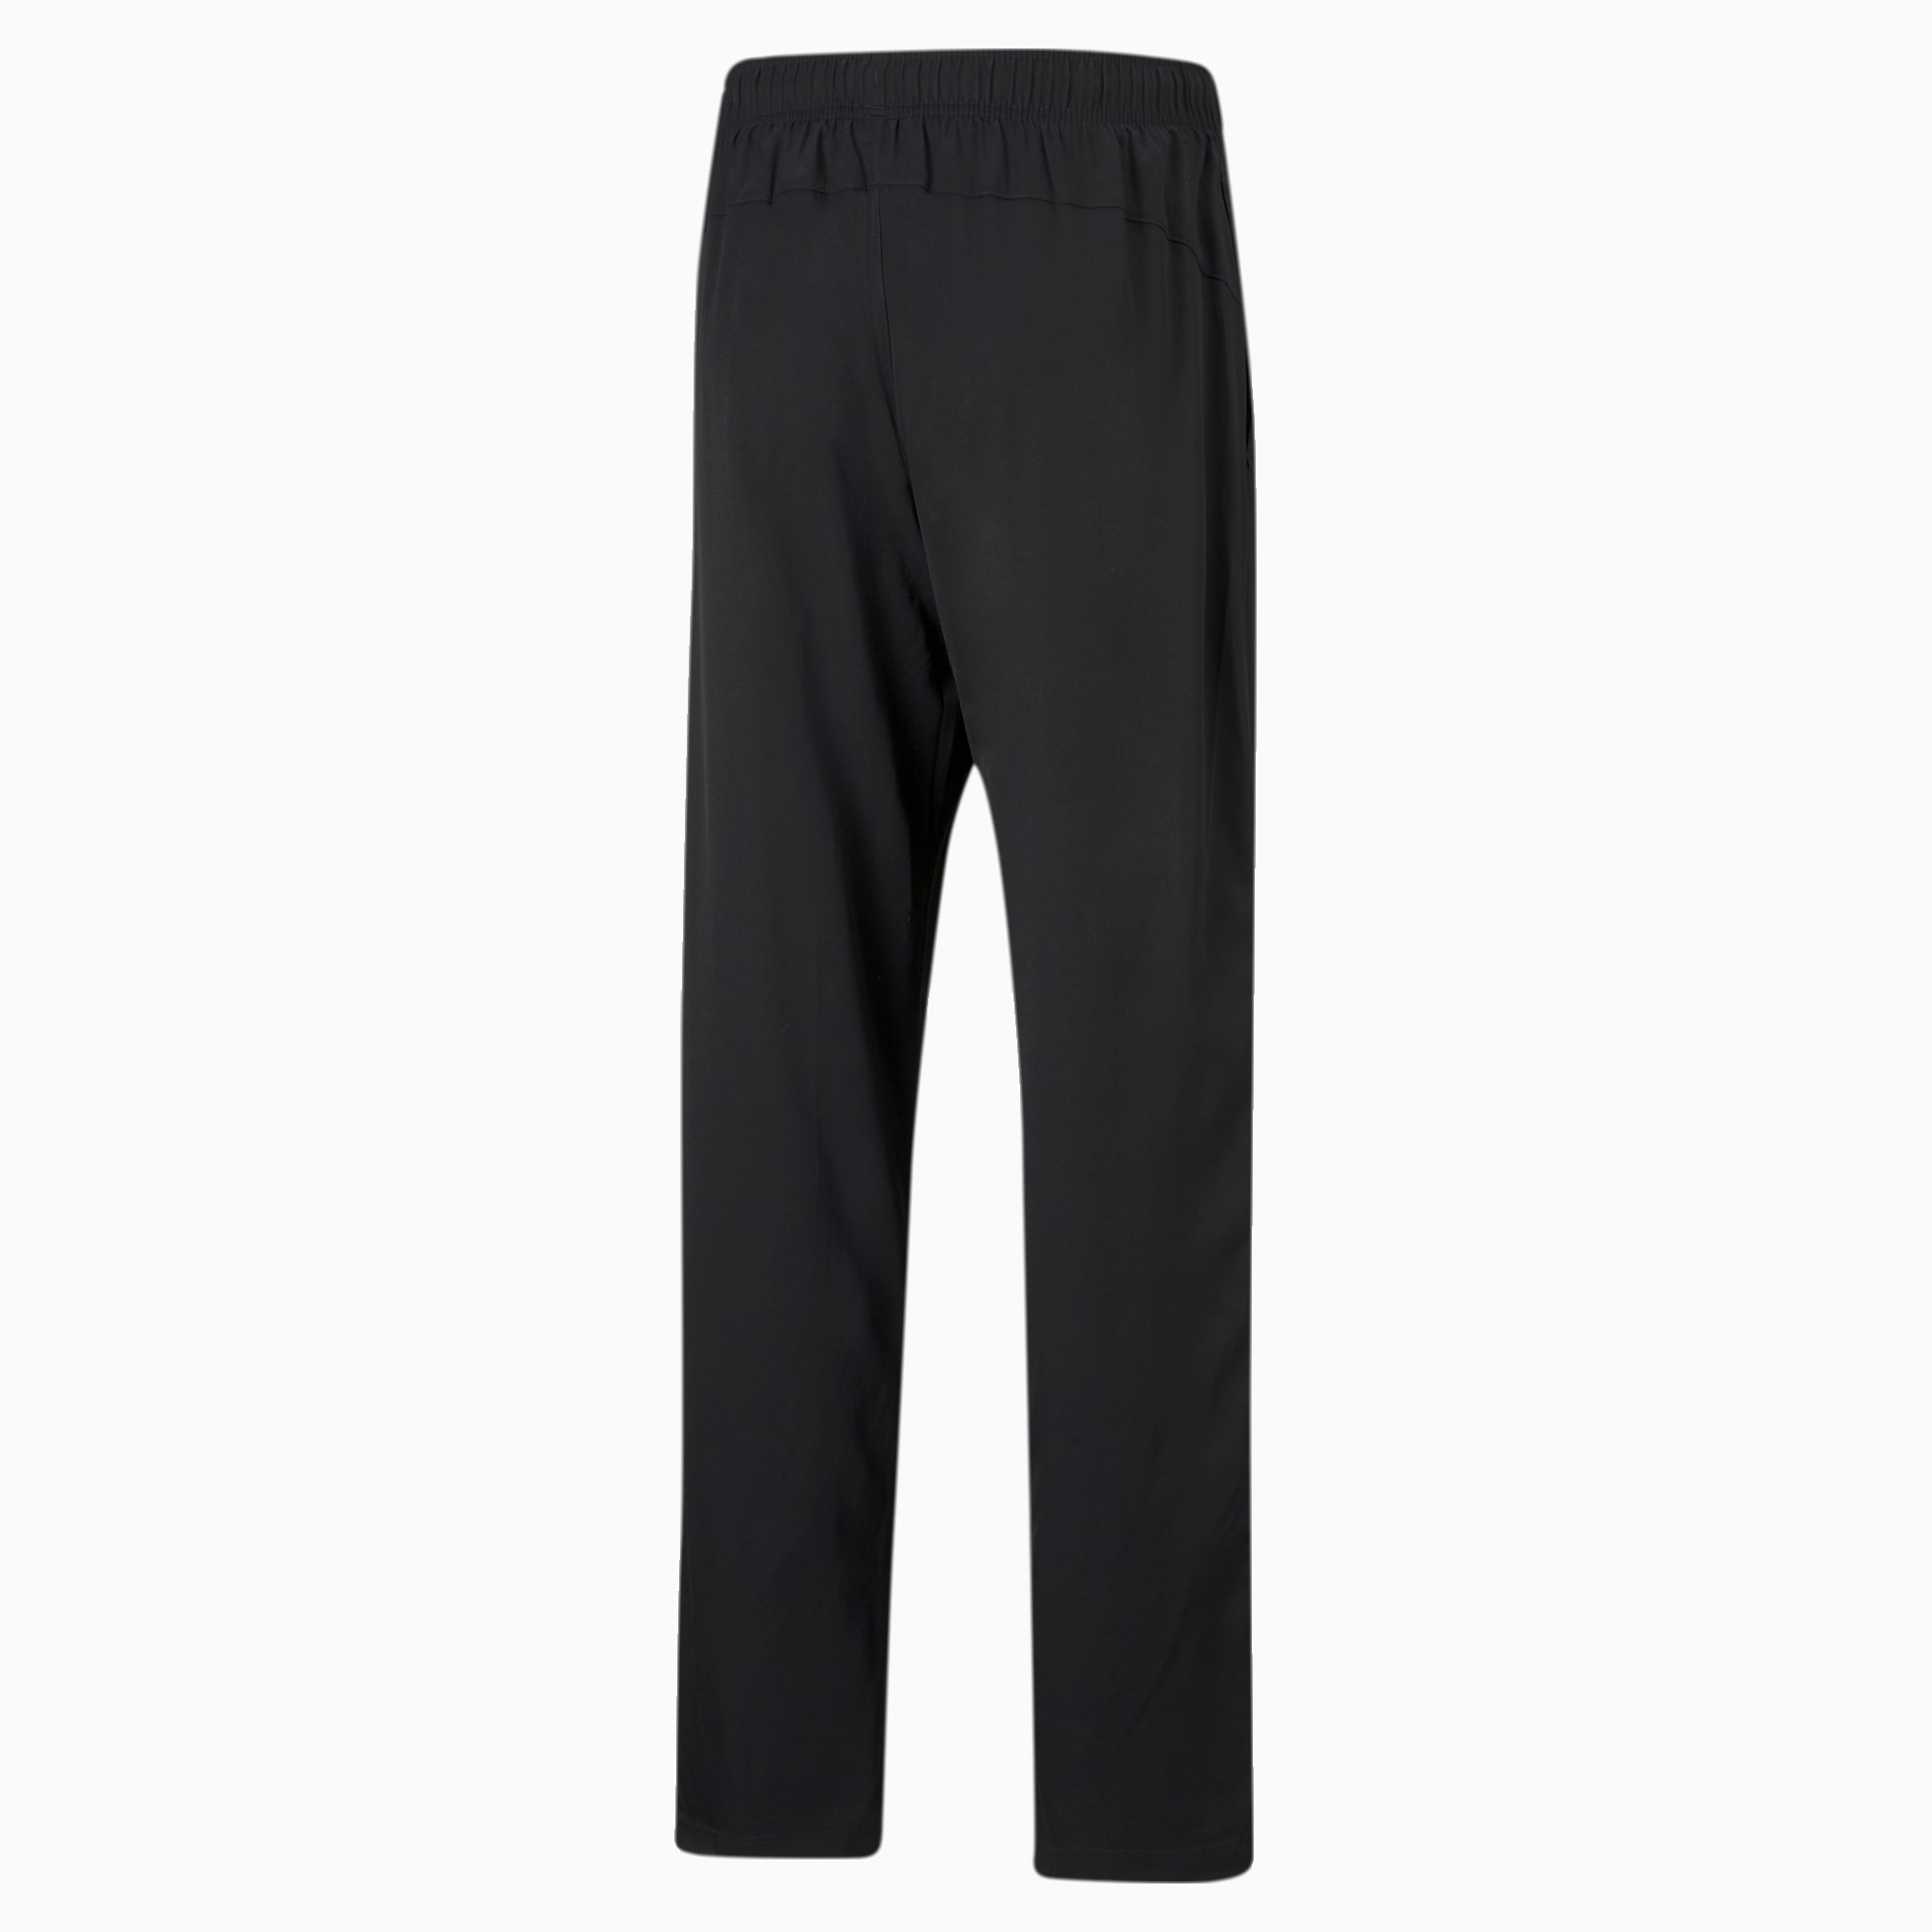 PUMA Active Woven Men's Sweatpants, Black, Size XXL, Clothing